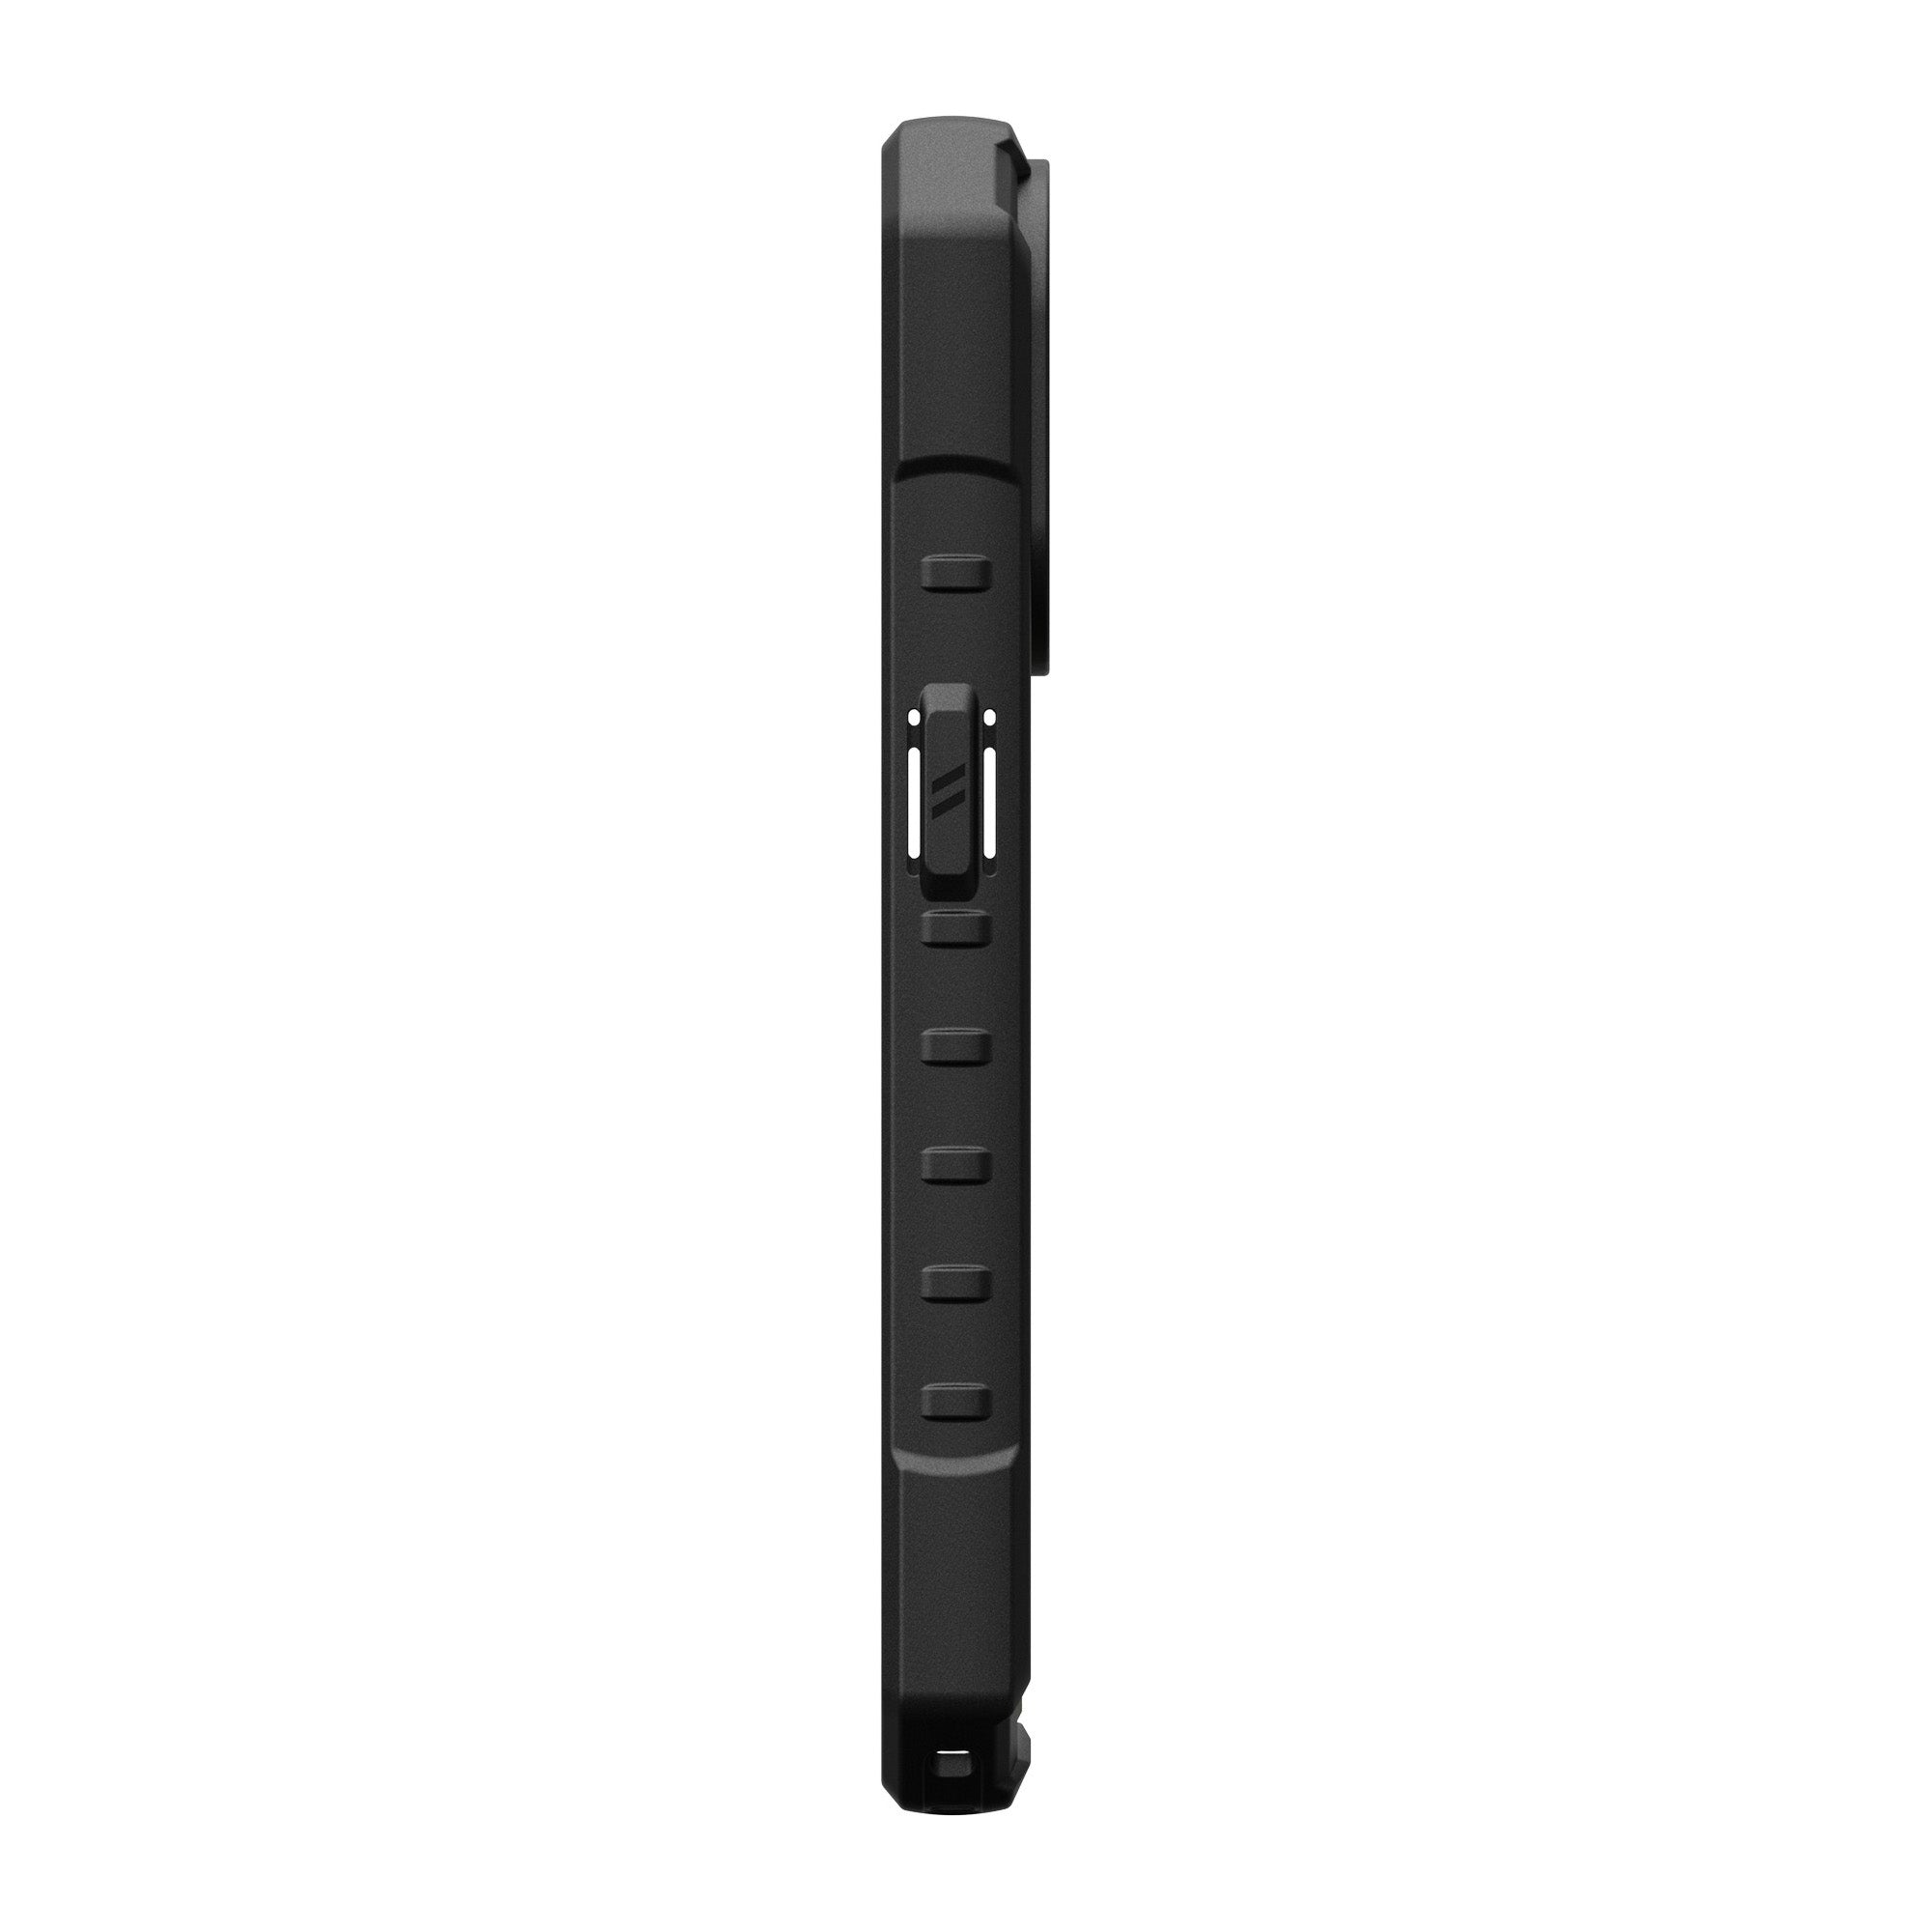 iPhone 15 Pro UAG Pathfinder MagSafe Case - Olive Drab - 15-11502